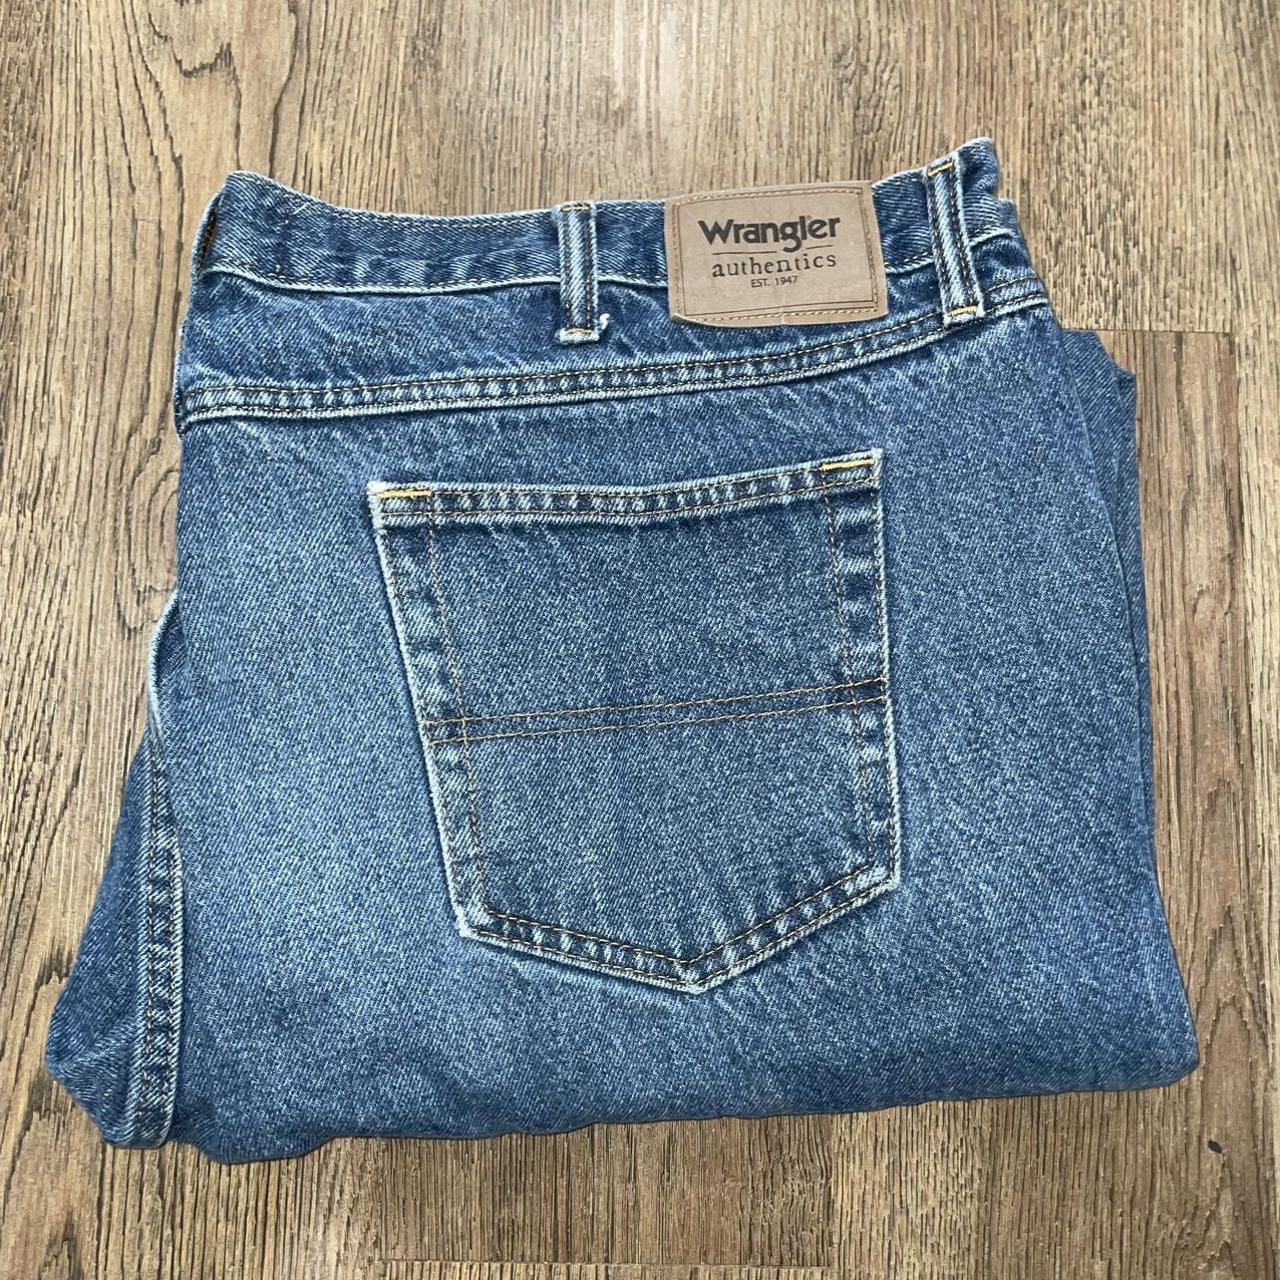 Wrangler Authentic jeans W:46 L:32 - Depop